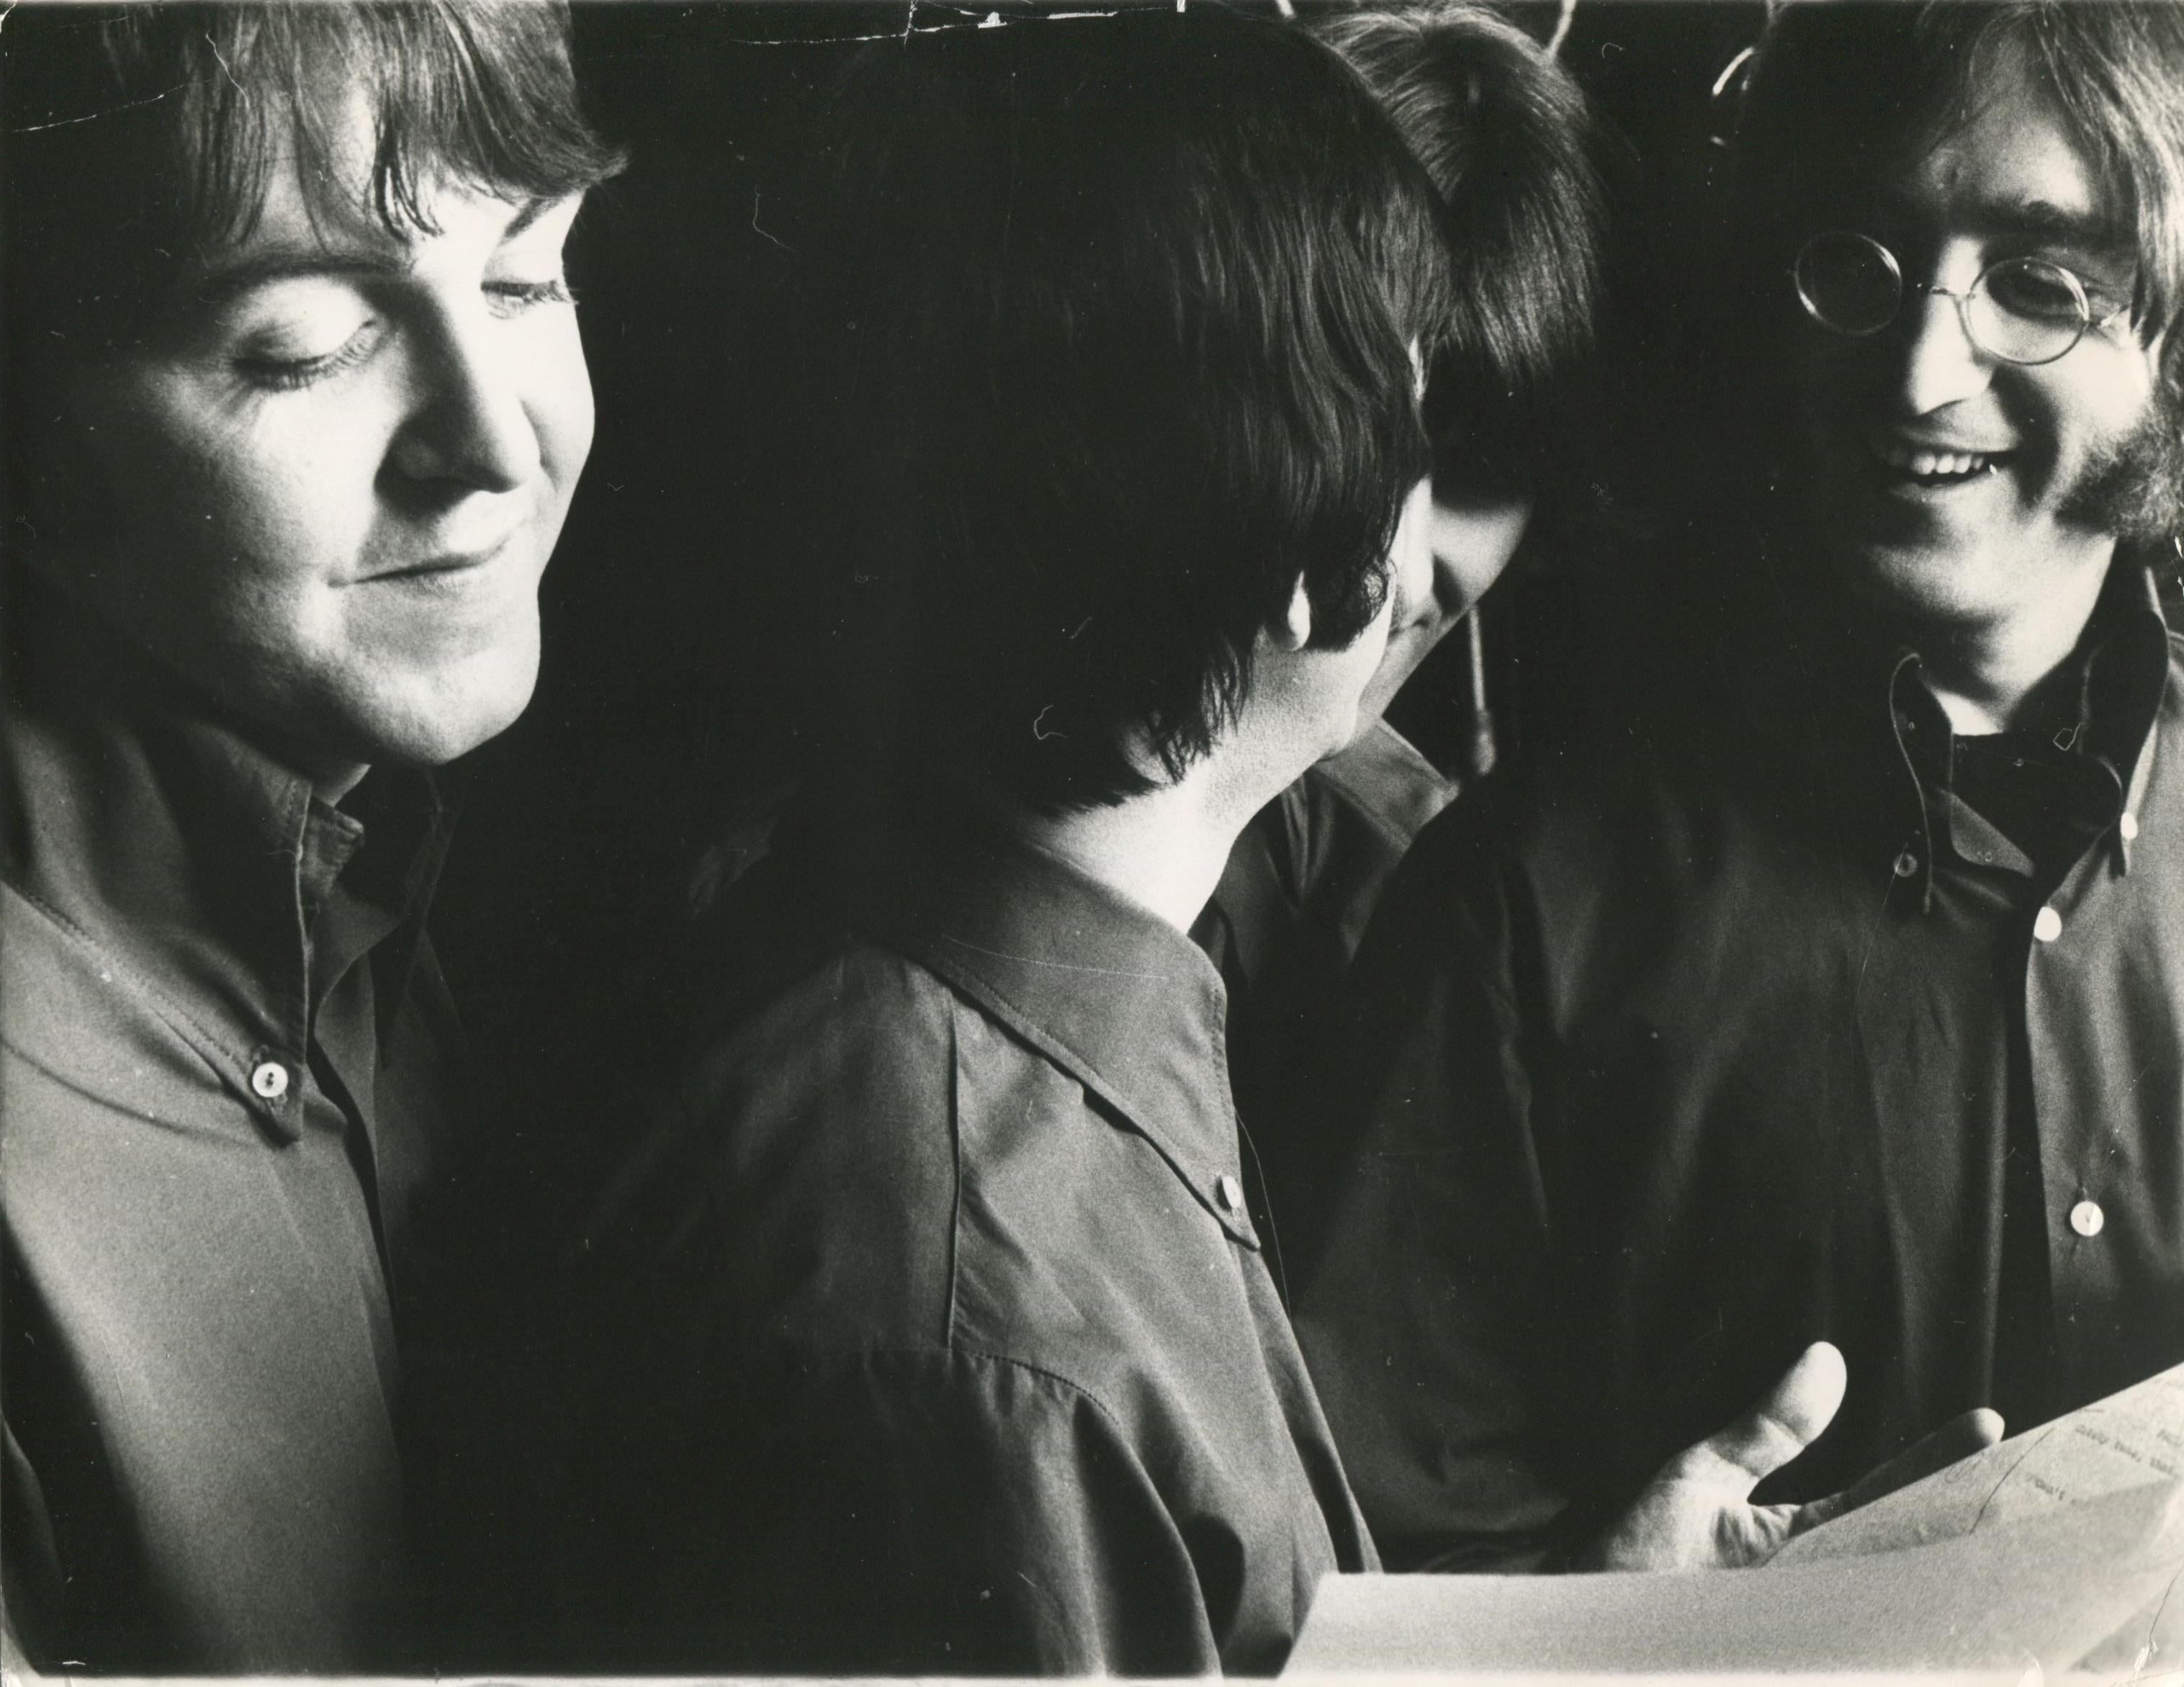 Martin Weaver Portrait Photograph - The Beatles, Studio Session, Portrait of 1969